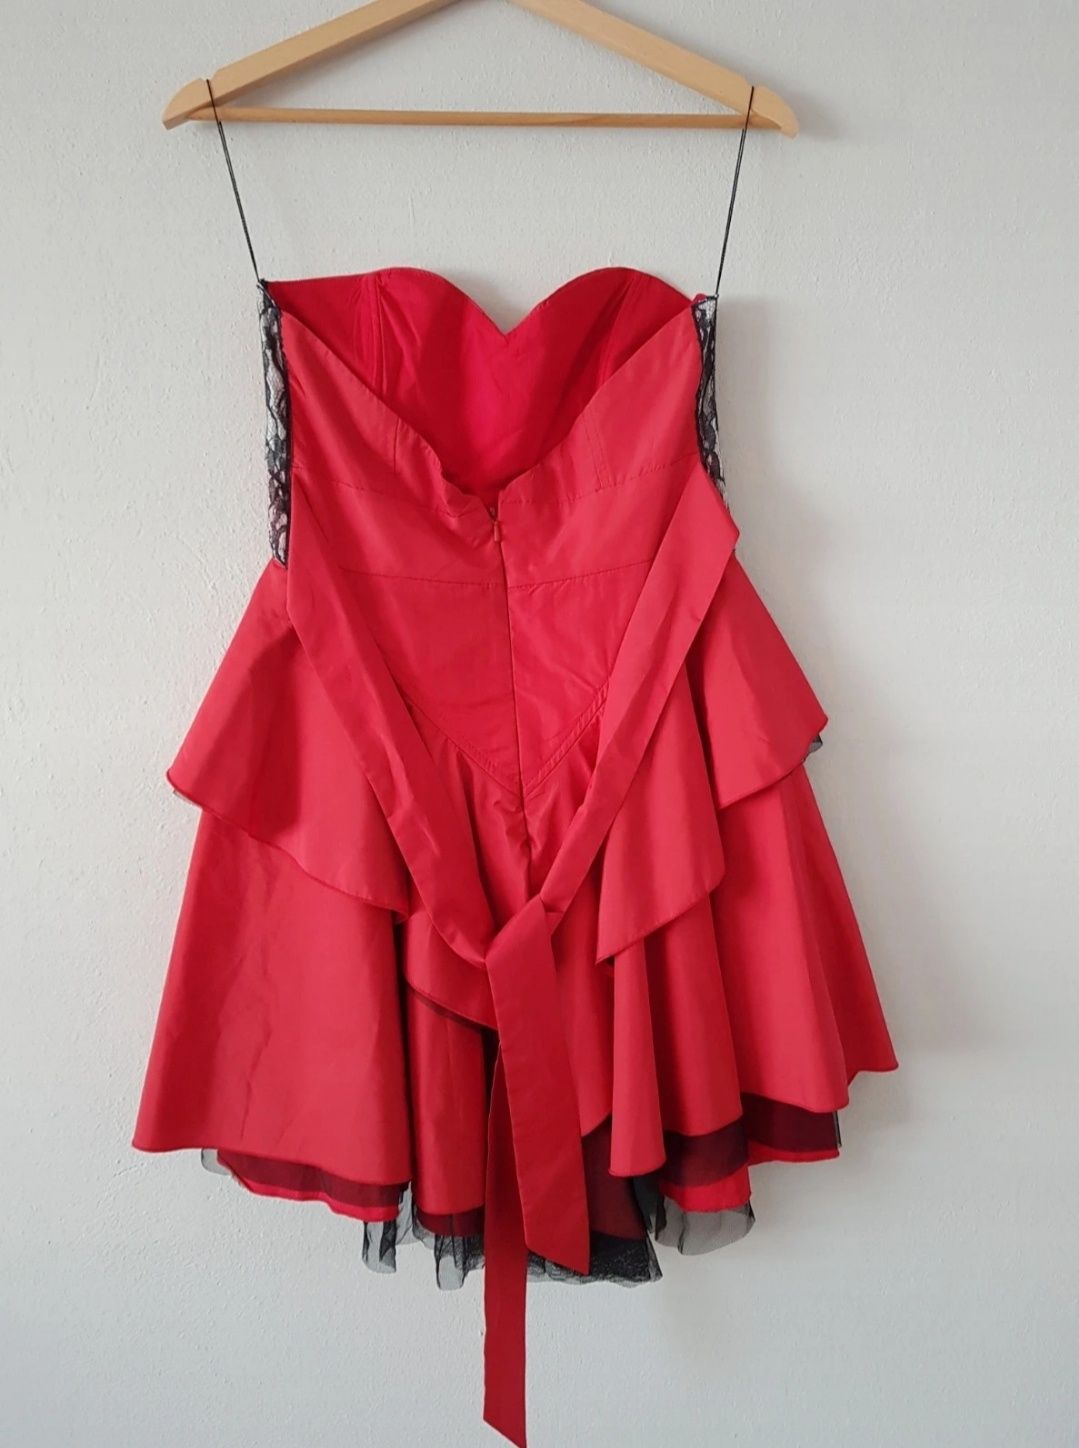 Czerwona śliczna sukienka na lato na wesele imprezę